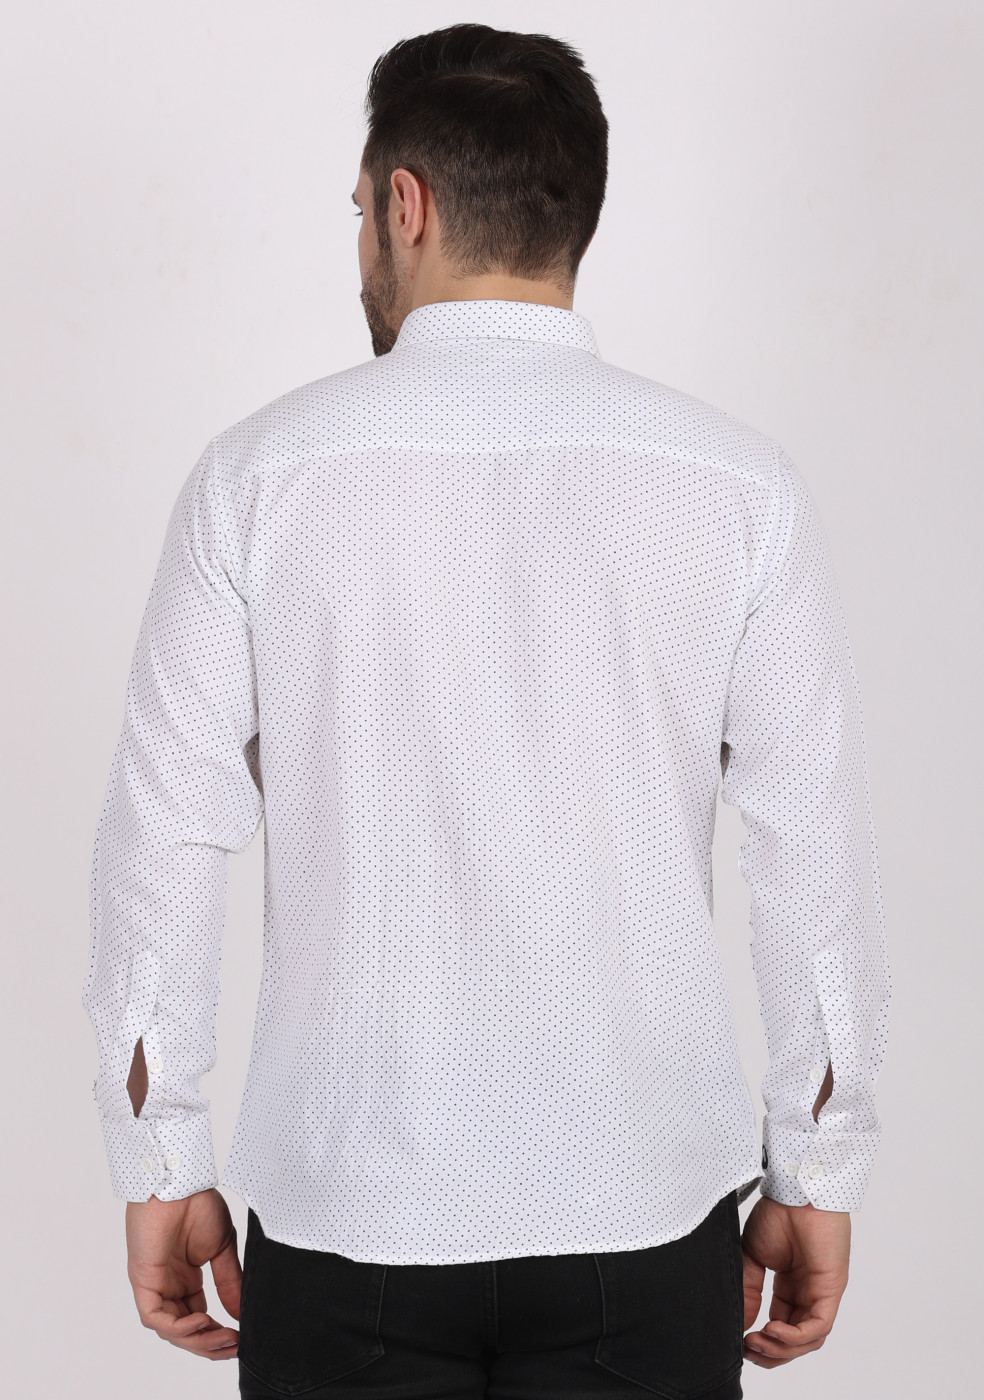 ASHTOM White Print Shirt For Men